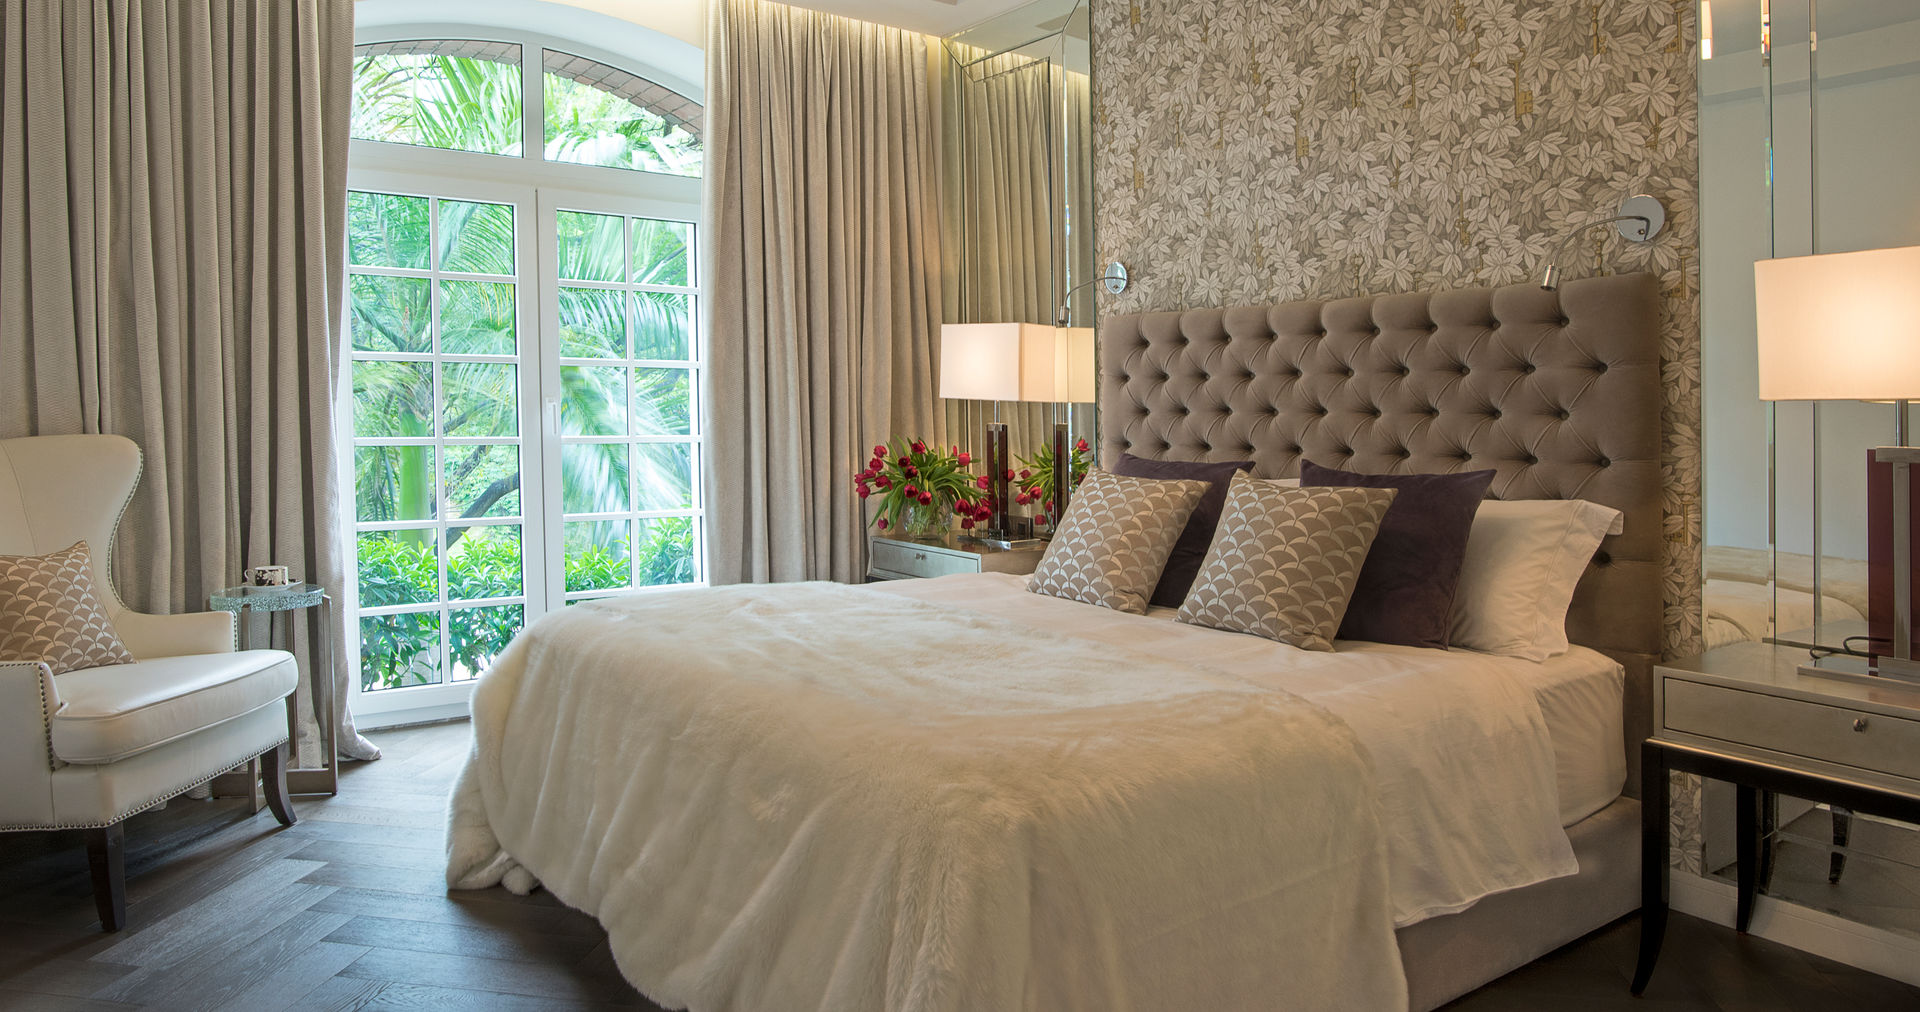 Maximalist Modern, Design Intervention Design Intervention Modern Bedroom